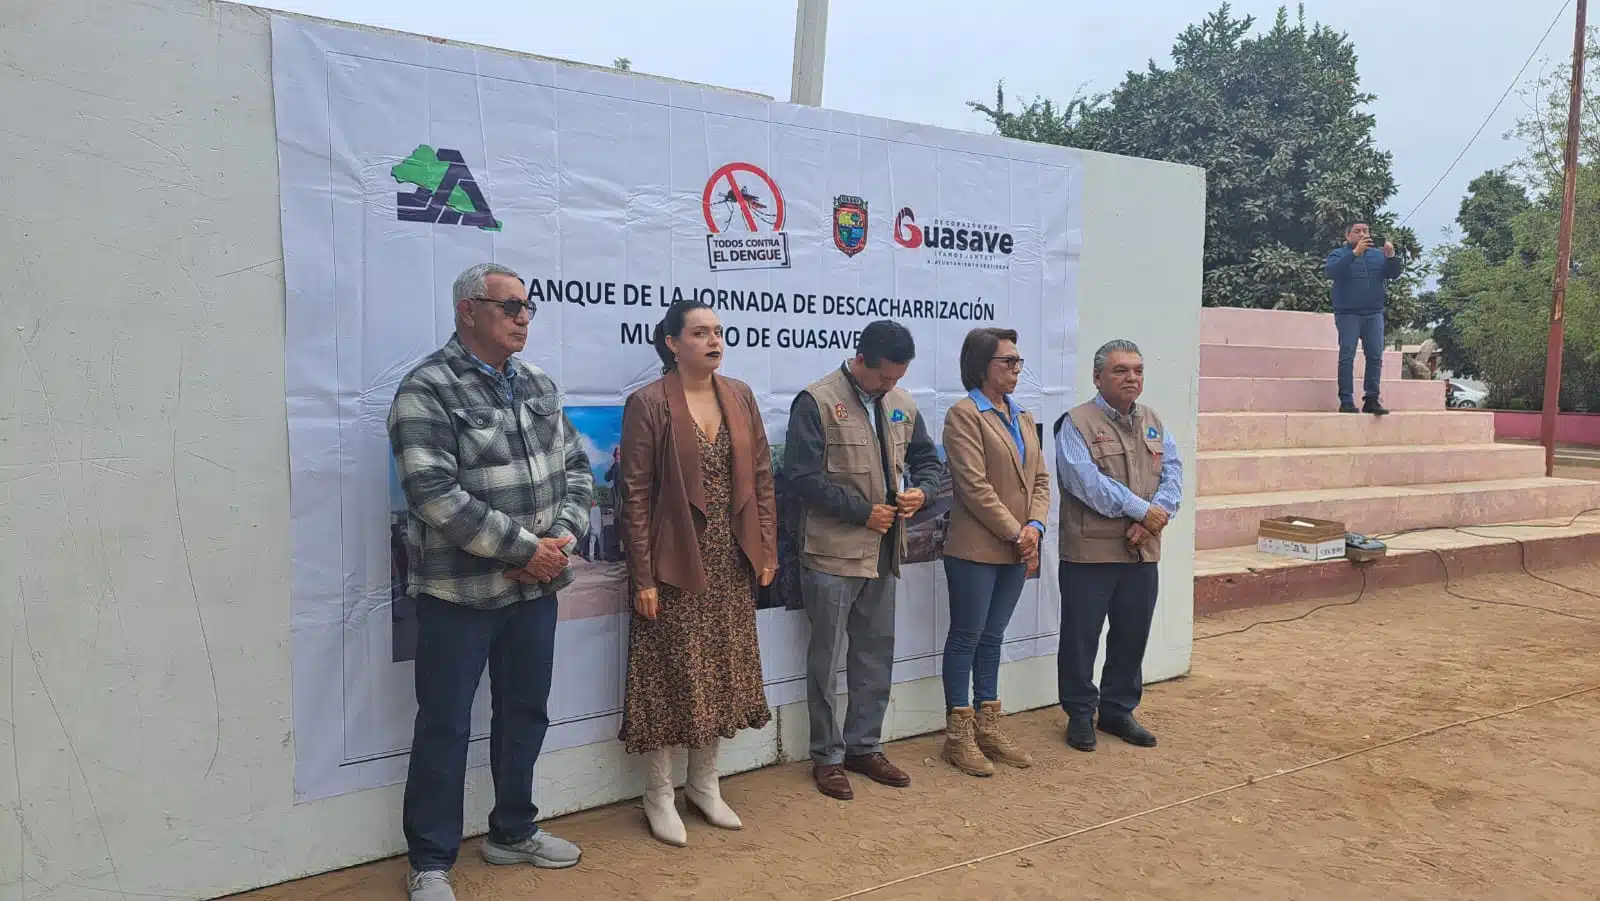 Campaña de descacharrización para evitar el mosco del dengue en Guasave